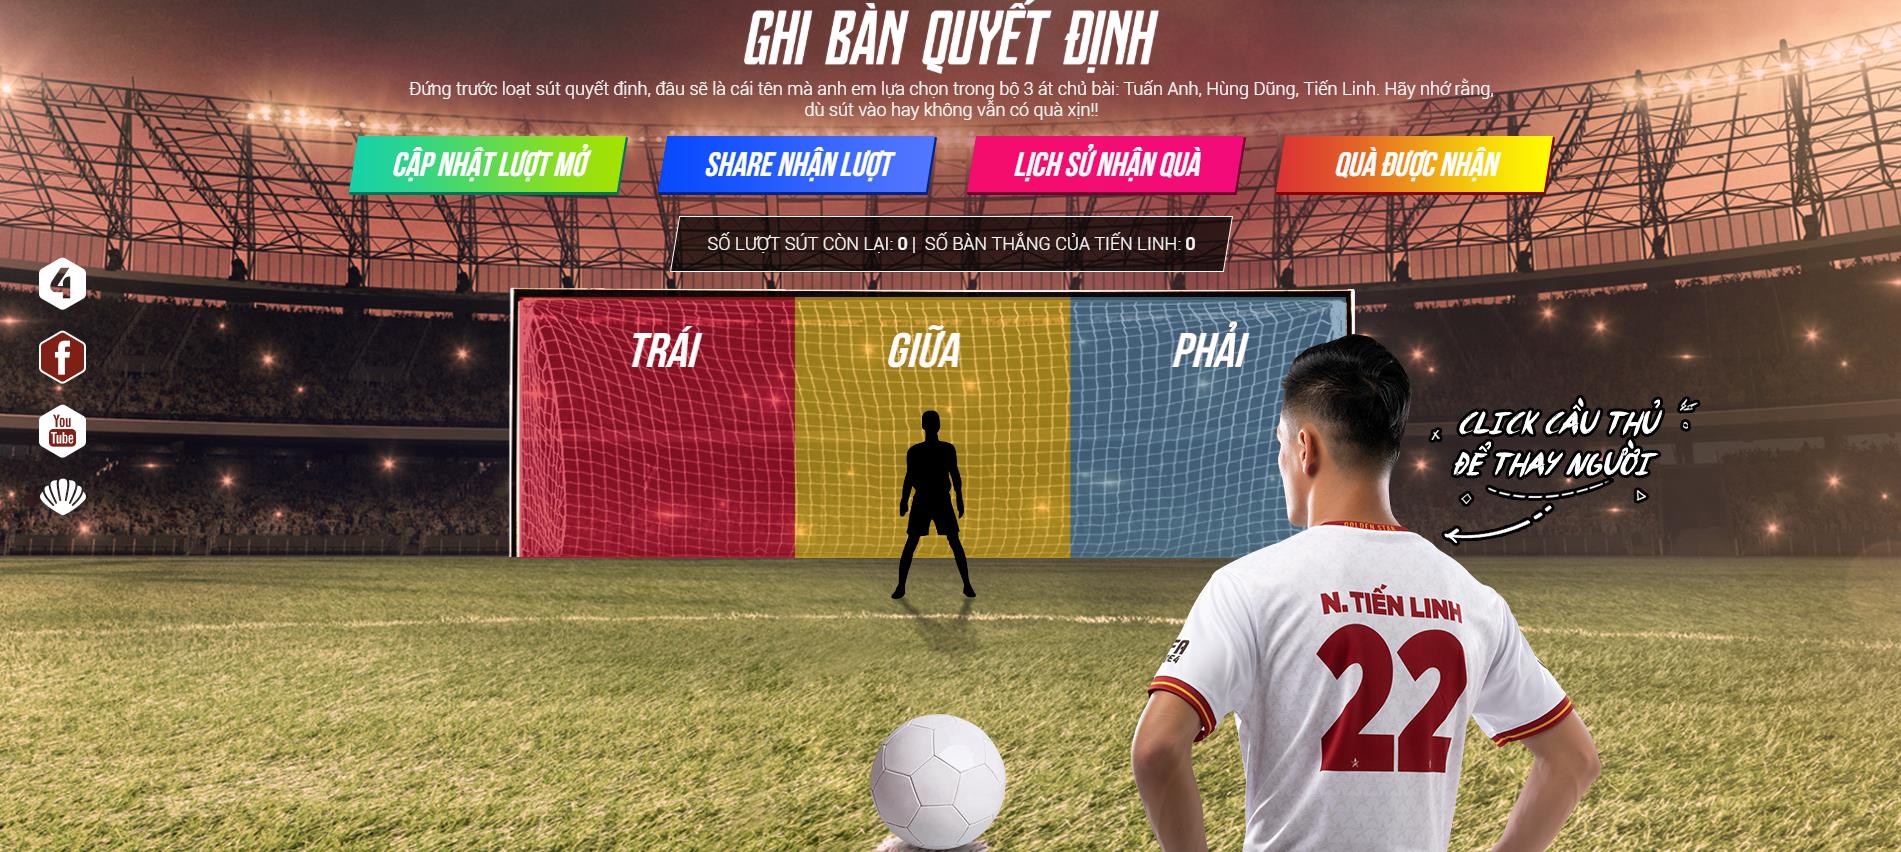 Fifa Online 4 Mở Riêng Chế Độ Đá Penalty Cực Độc, Chào Mừng Bộ 3 Cầu Thủ  Việt Tuấn Anh, Hùng Dũng, Tiến Linh Xuất Hiện